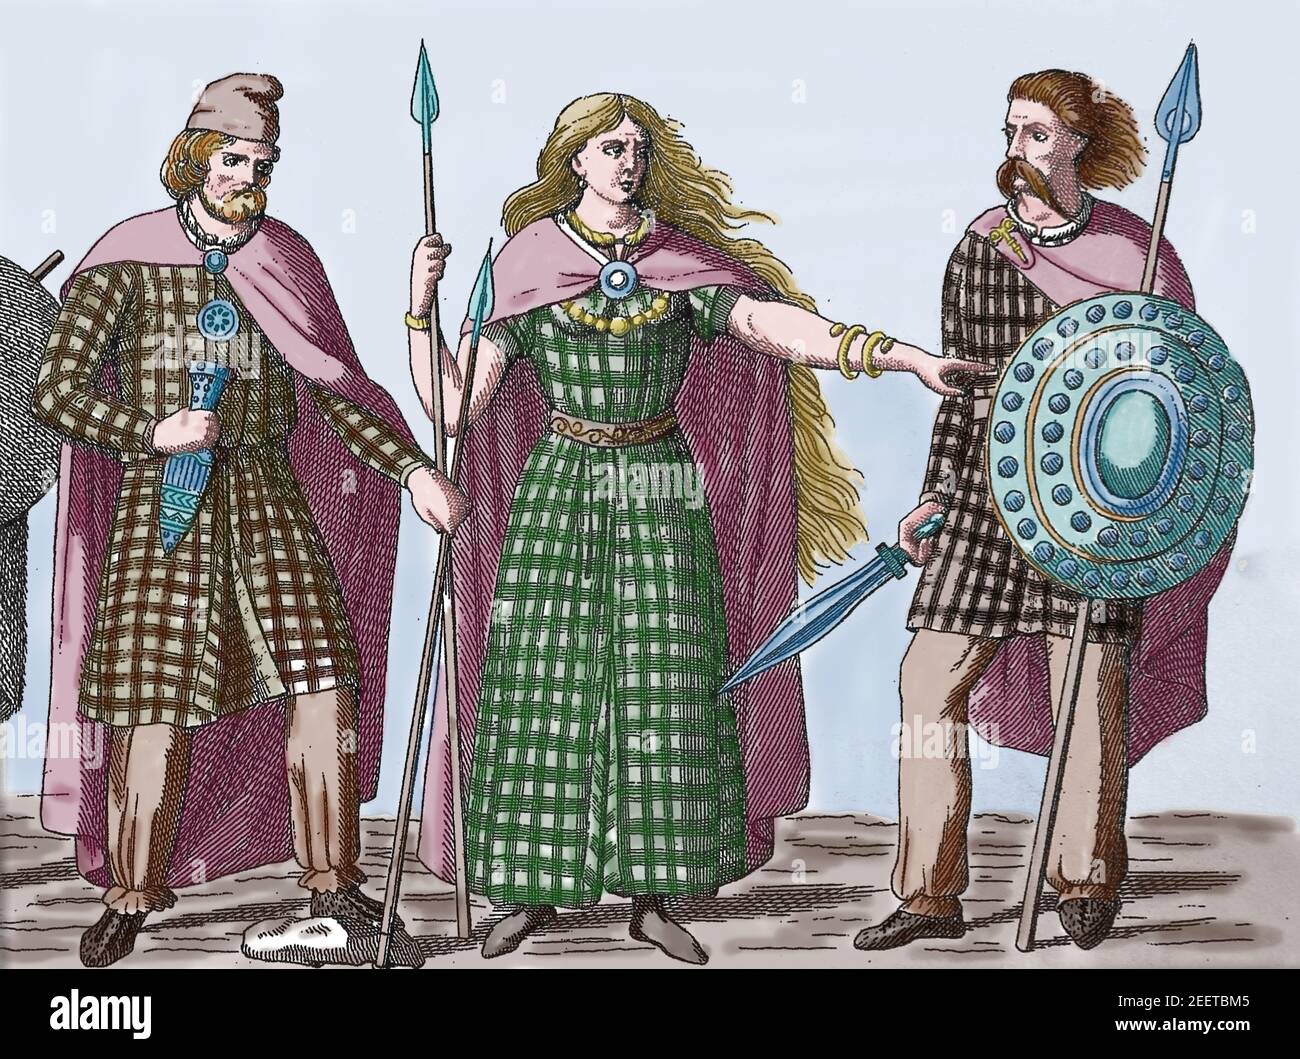 Die Königin des britischen keltischen Iceni-Stammes Boudica (33 -61) zwischen einem Häuptling und einem Krieger. Organisierte eine Revolte gegen die römische Besatzung. England. Stockfoto